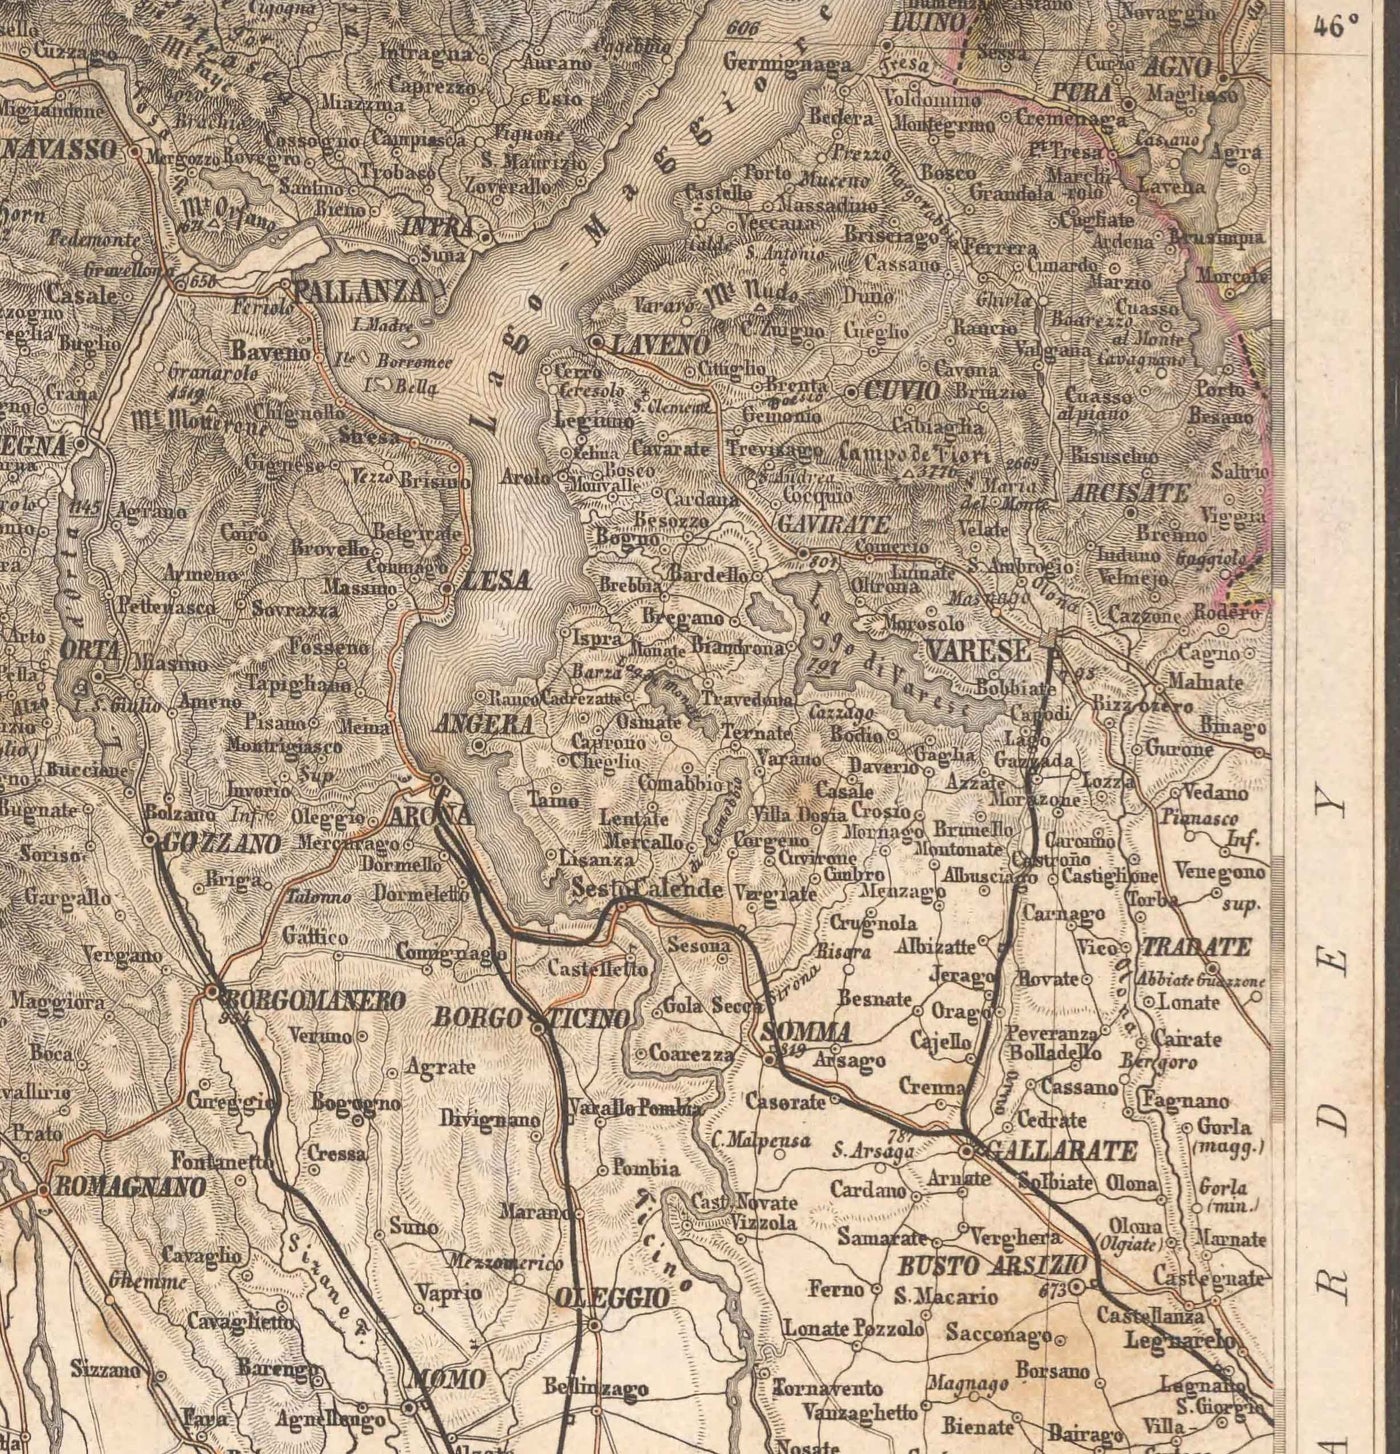 Ancienne carte des Alpes en 1874 par Johann Mayr - Cervin, Mont Blanc, Genève, Rhône, Lausanne, Grenoble, Sierre